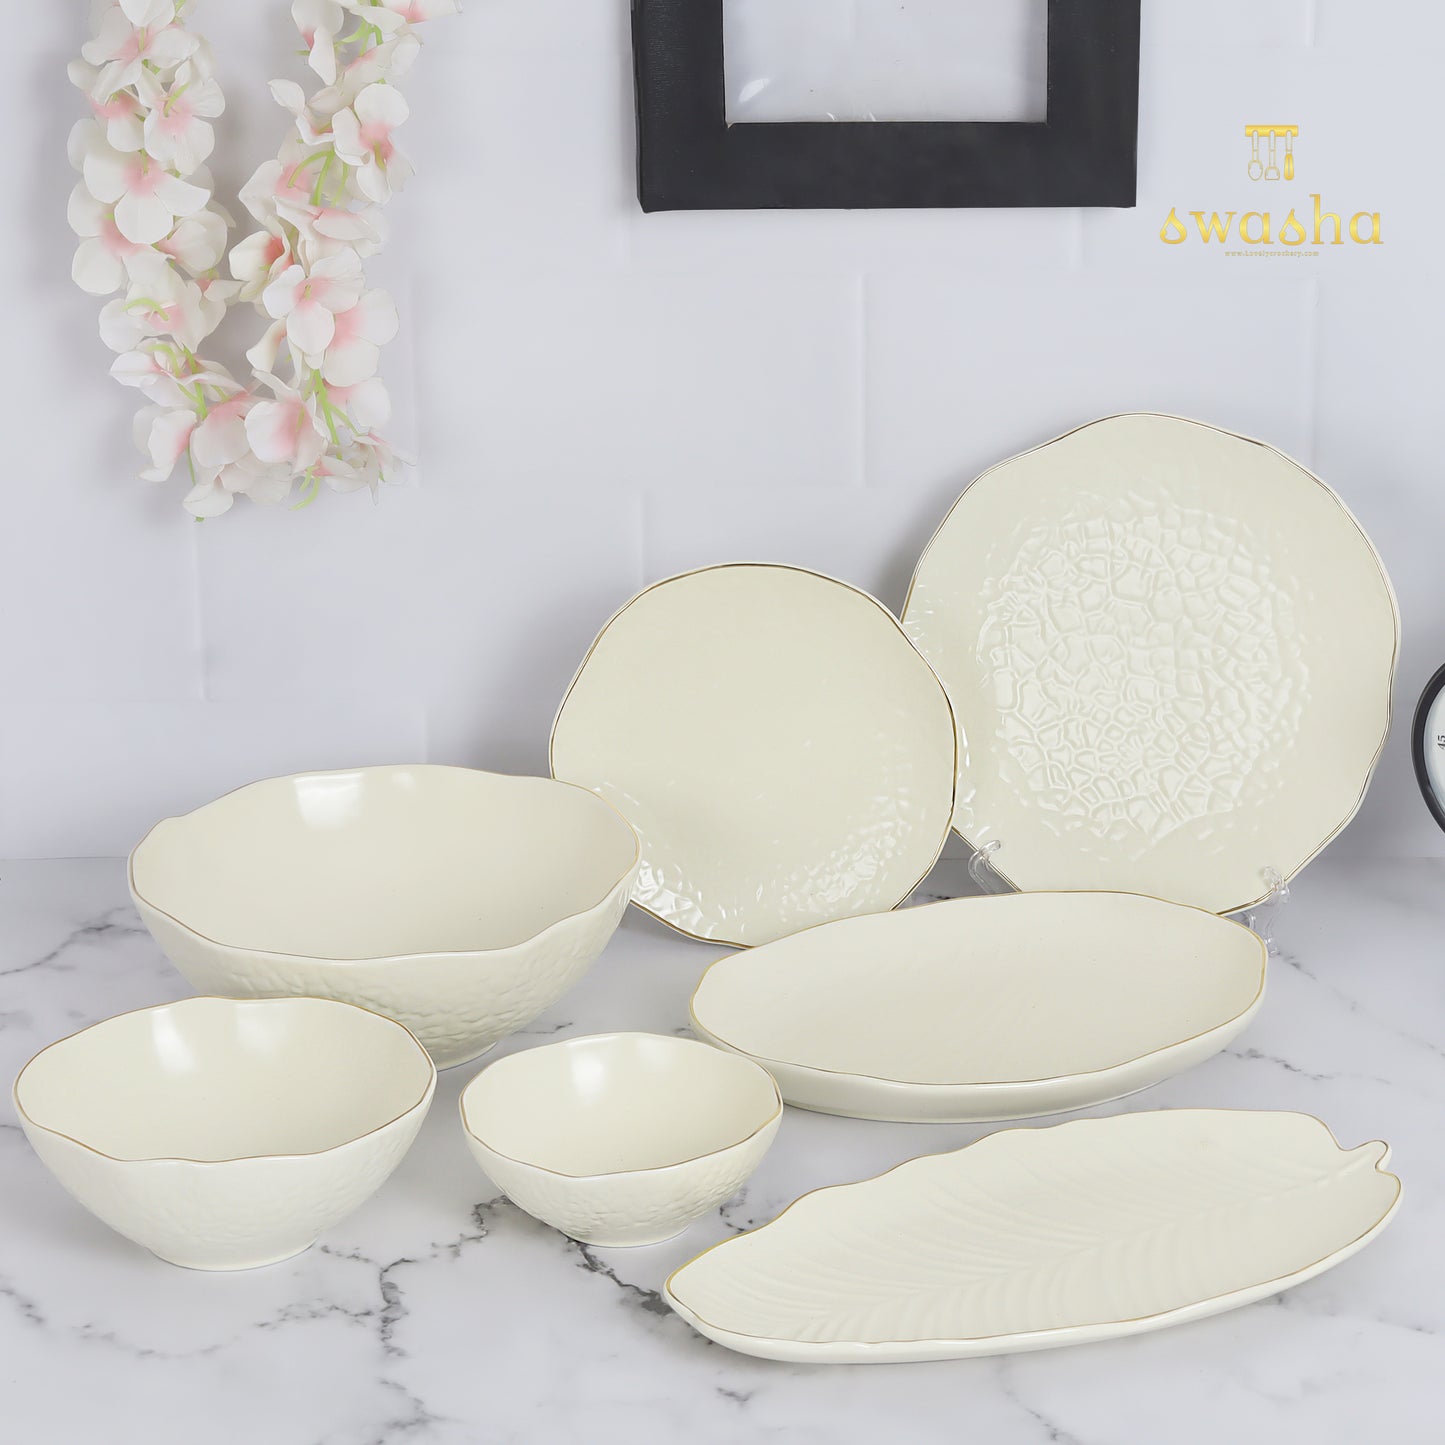 Ceramic snacks set or platter - elegantly crafted for delightful serving experiences